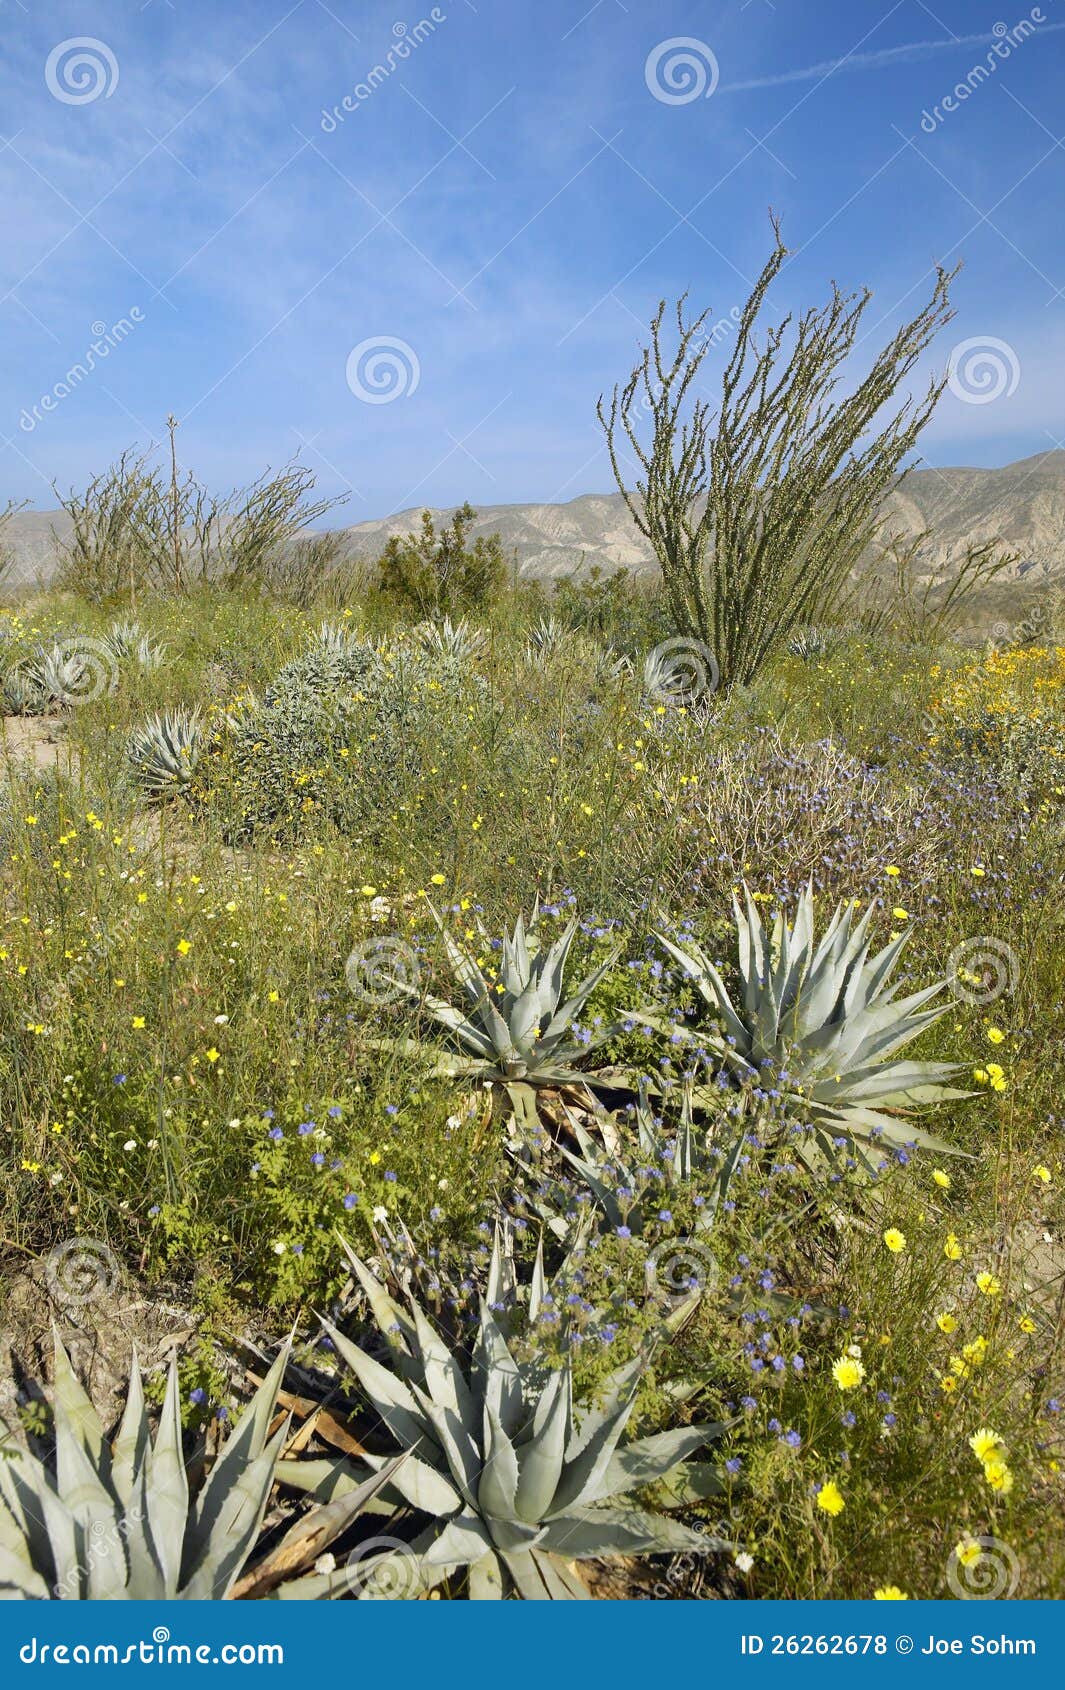 ocotillo blossoms in springtime desert